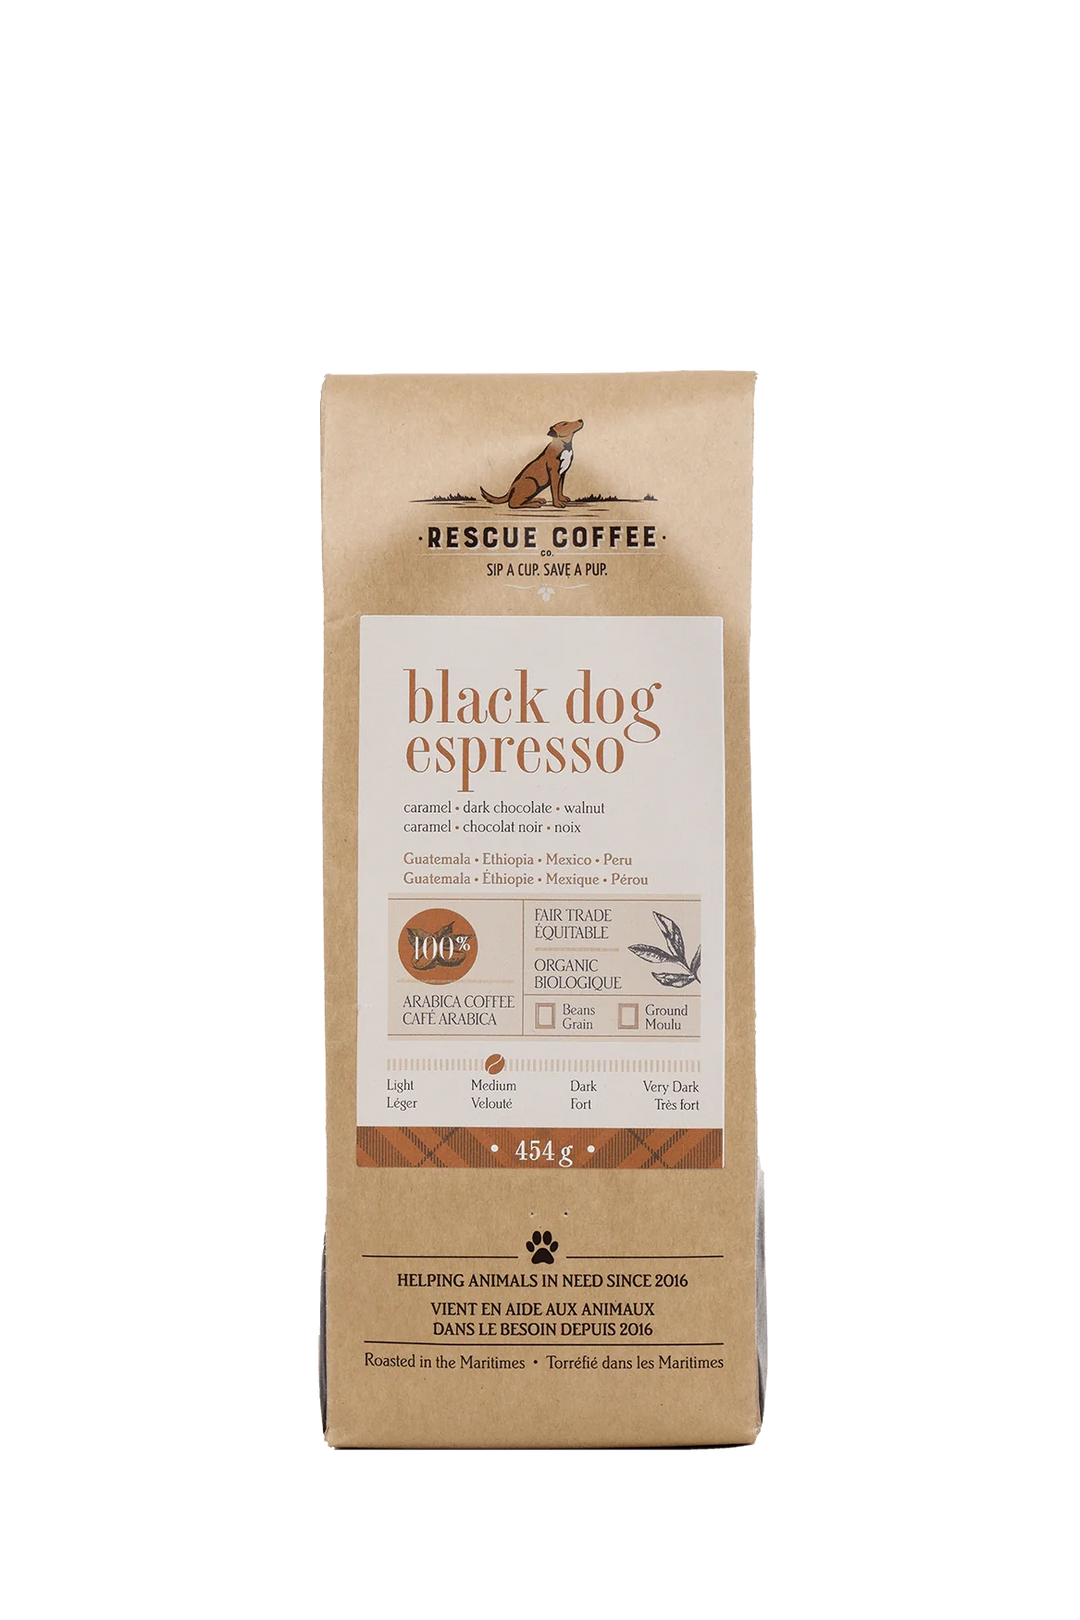 Rescue Coffee Black Dog Espresso